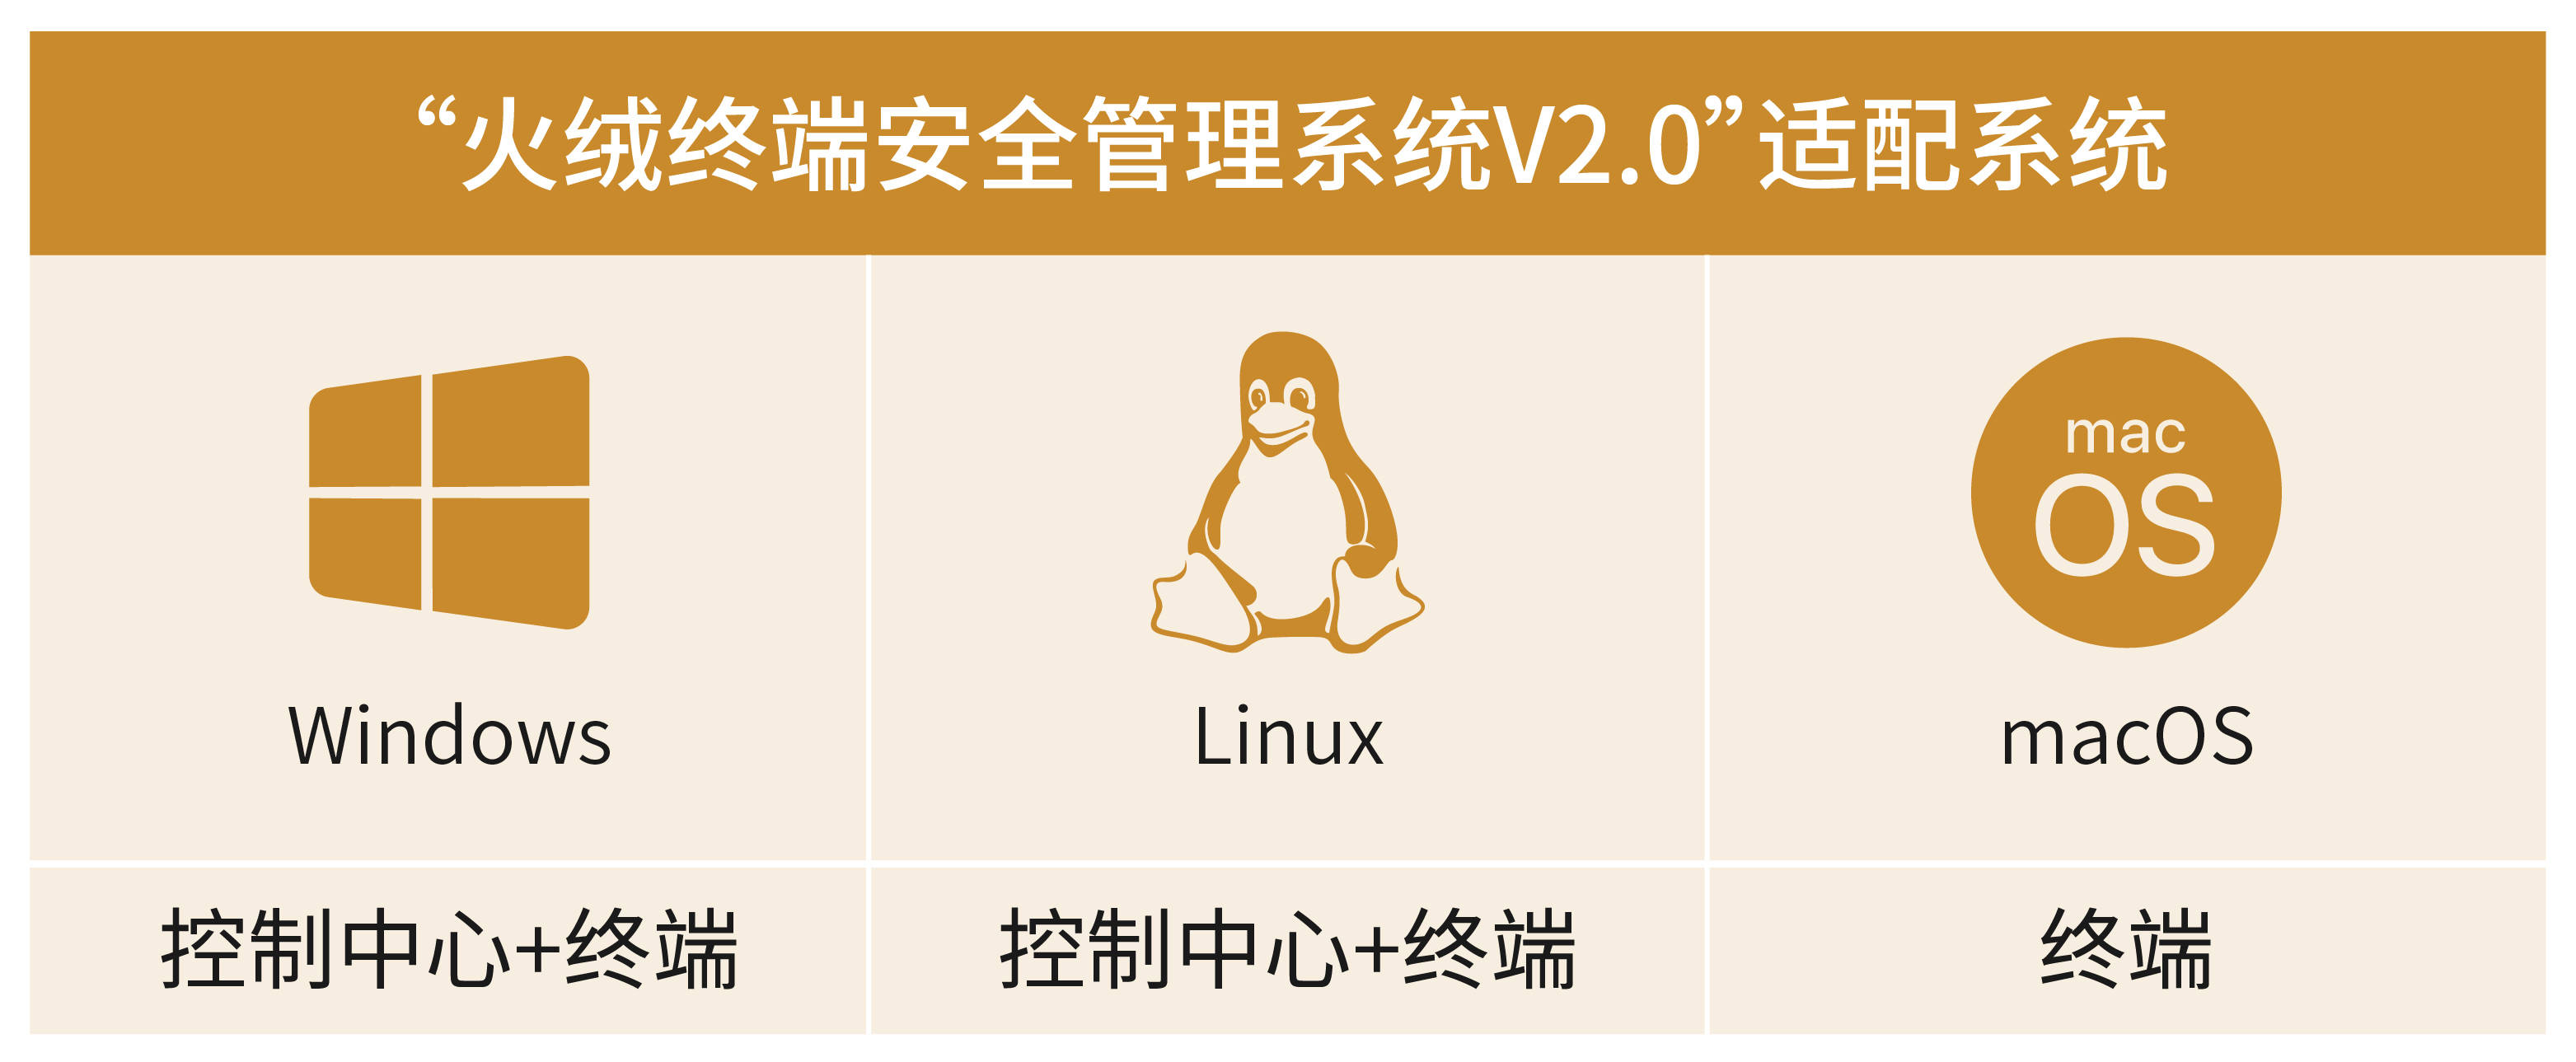 沙盒引擎盖瑞模组苹果版:火绒终端安全管理系统V2.0发布Linux控制中心-第1张图片-太平洋在线下载